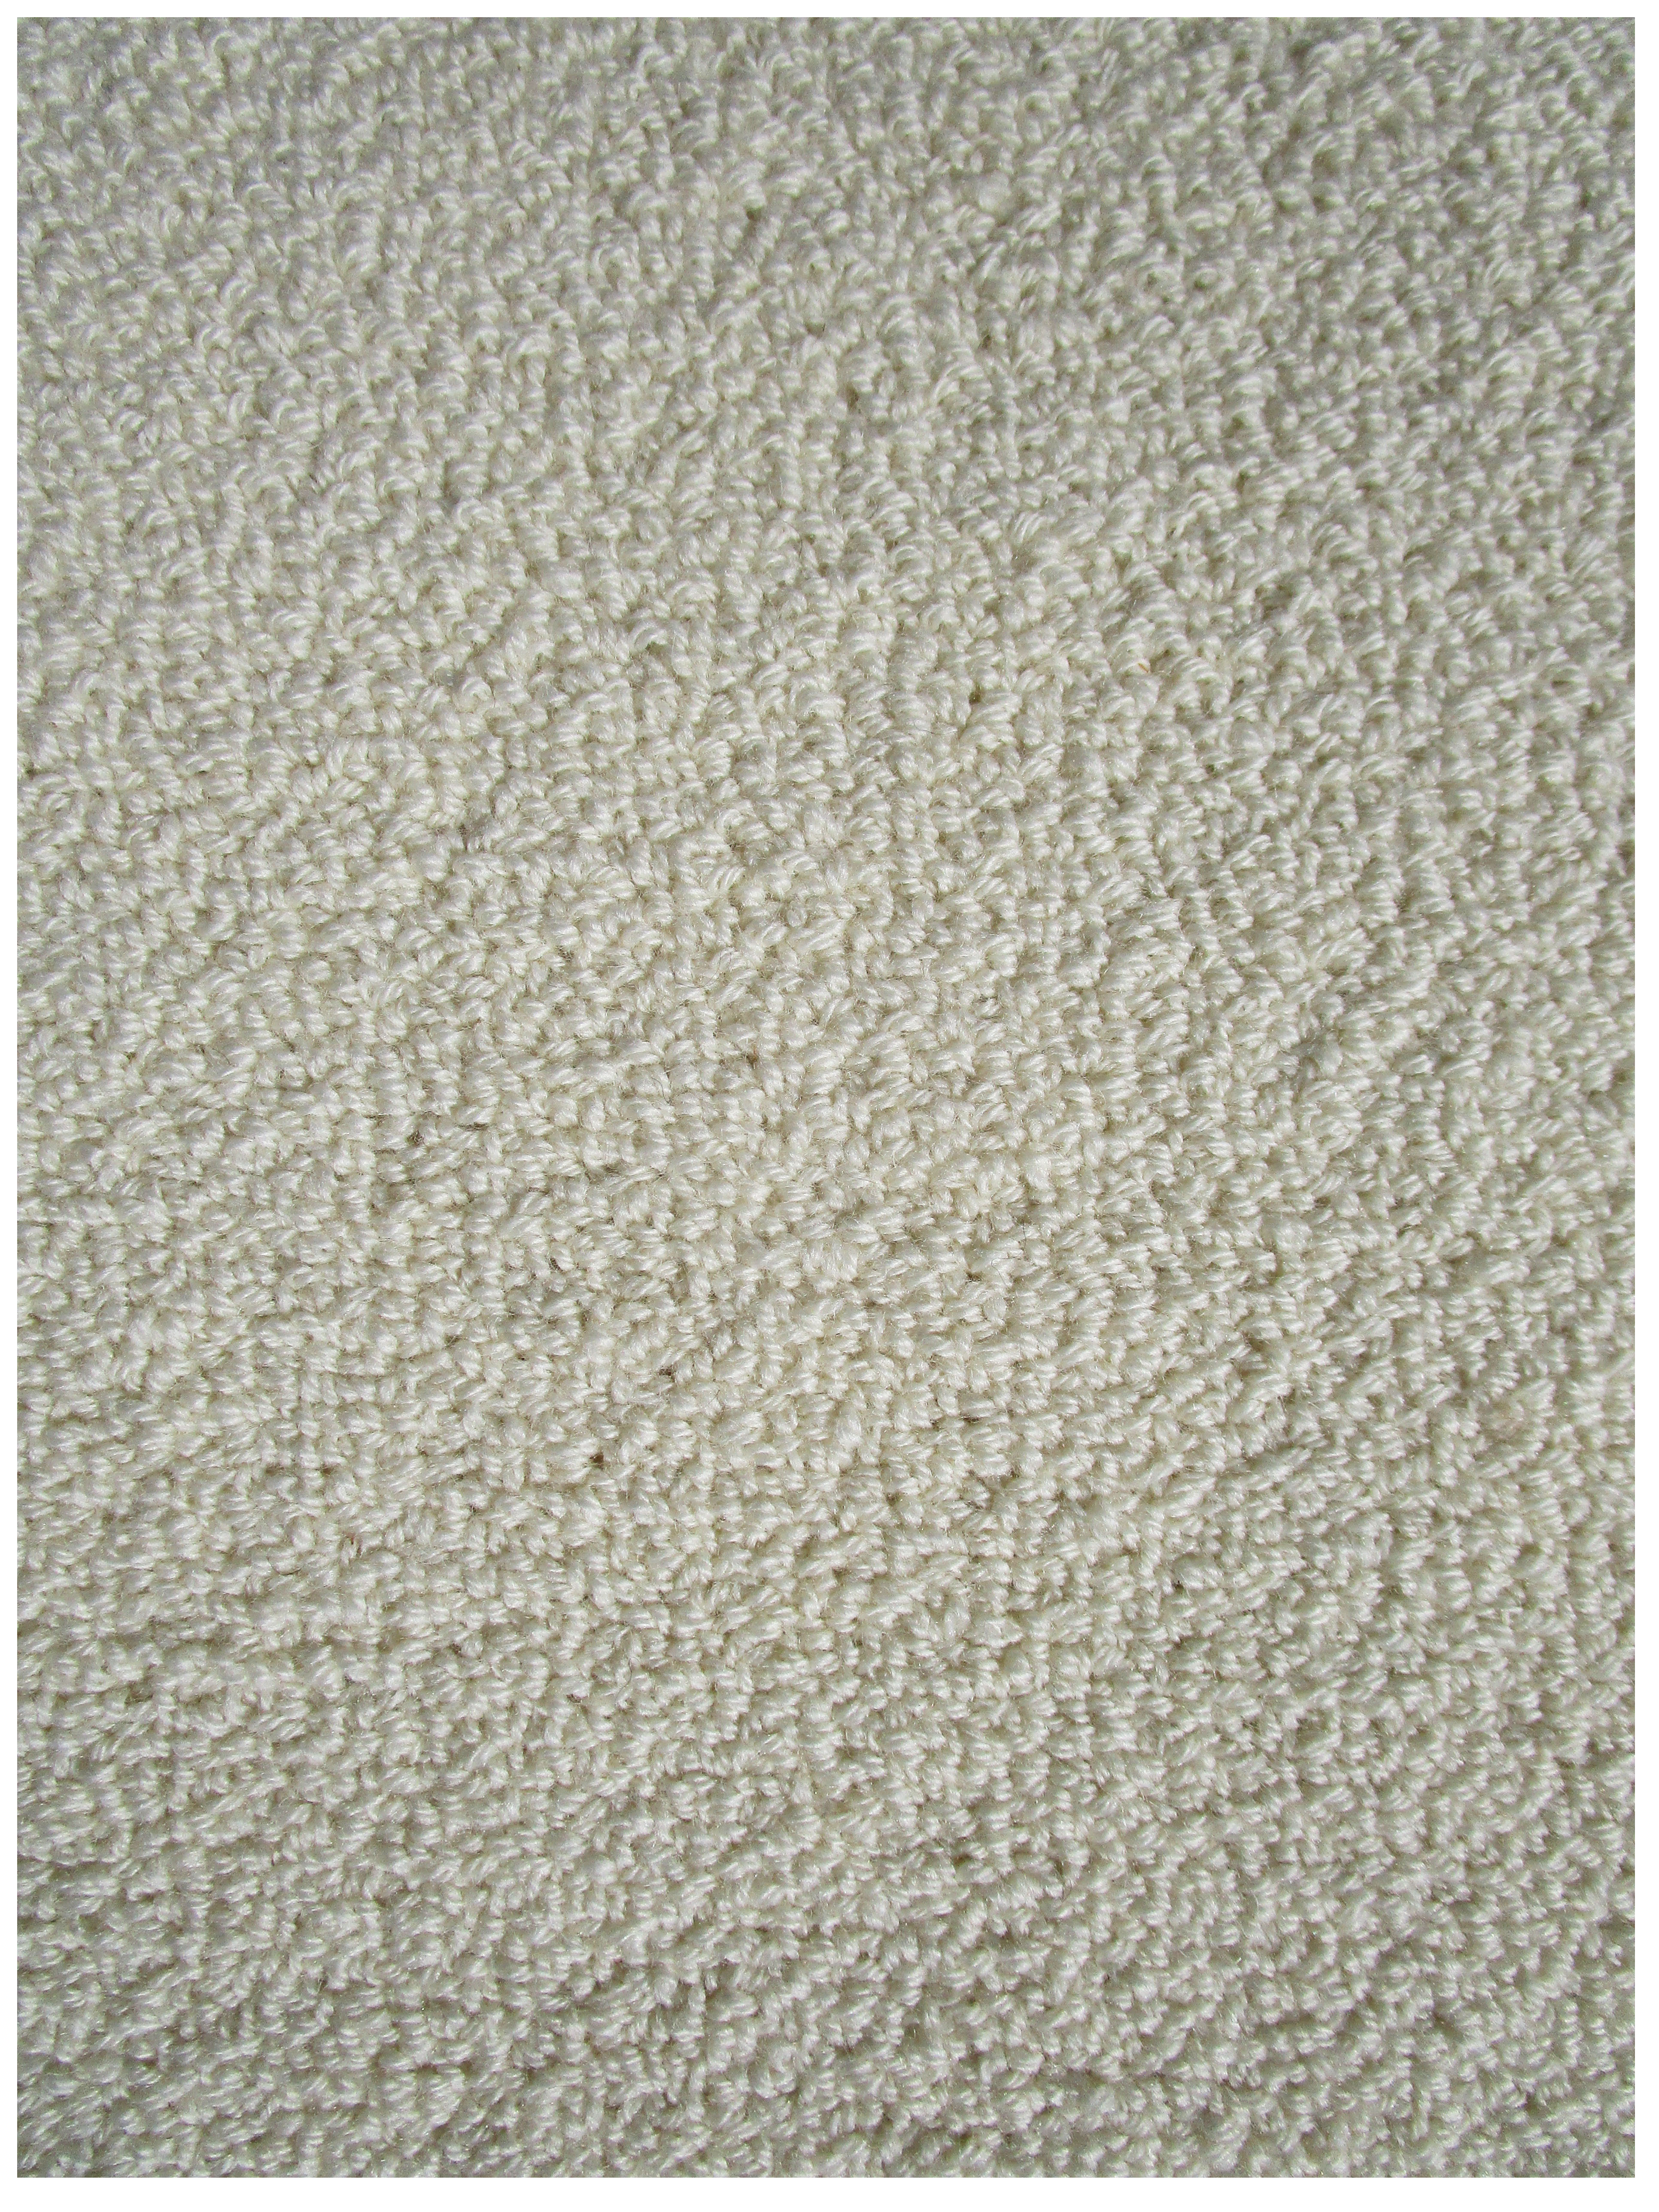 YM281 Alabaster 28 oz. Eco Friendly Rug or Carpet 